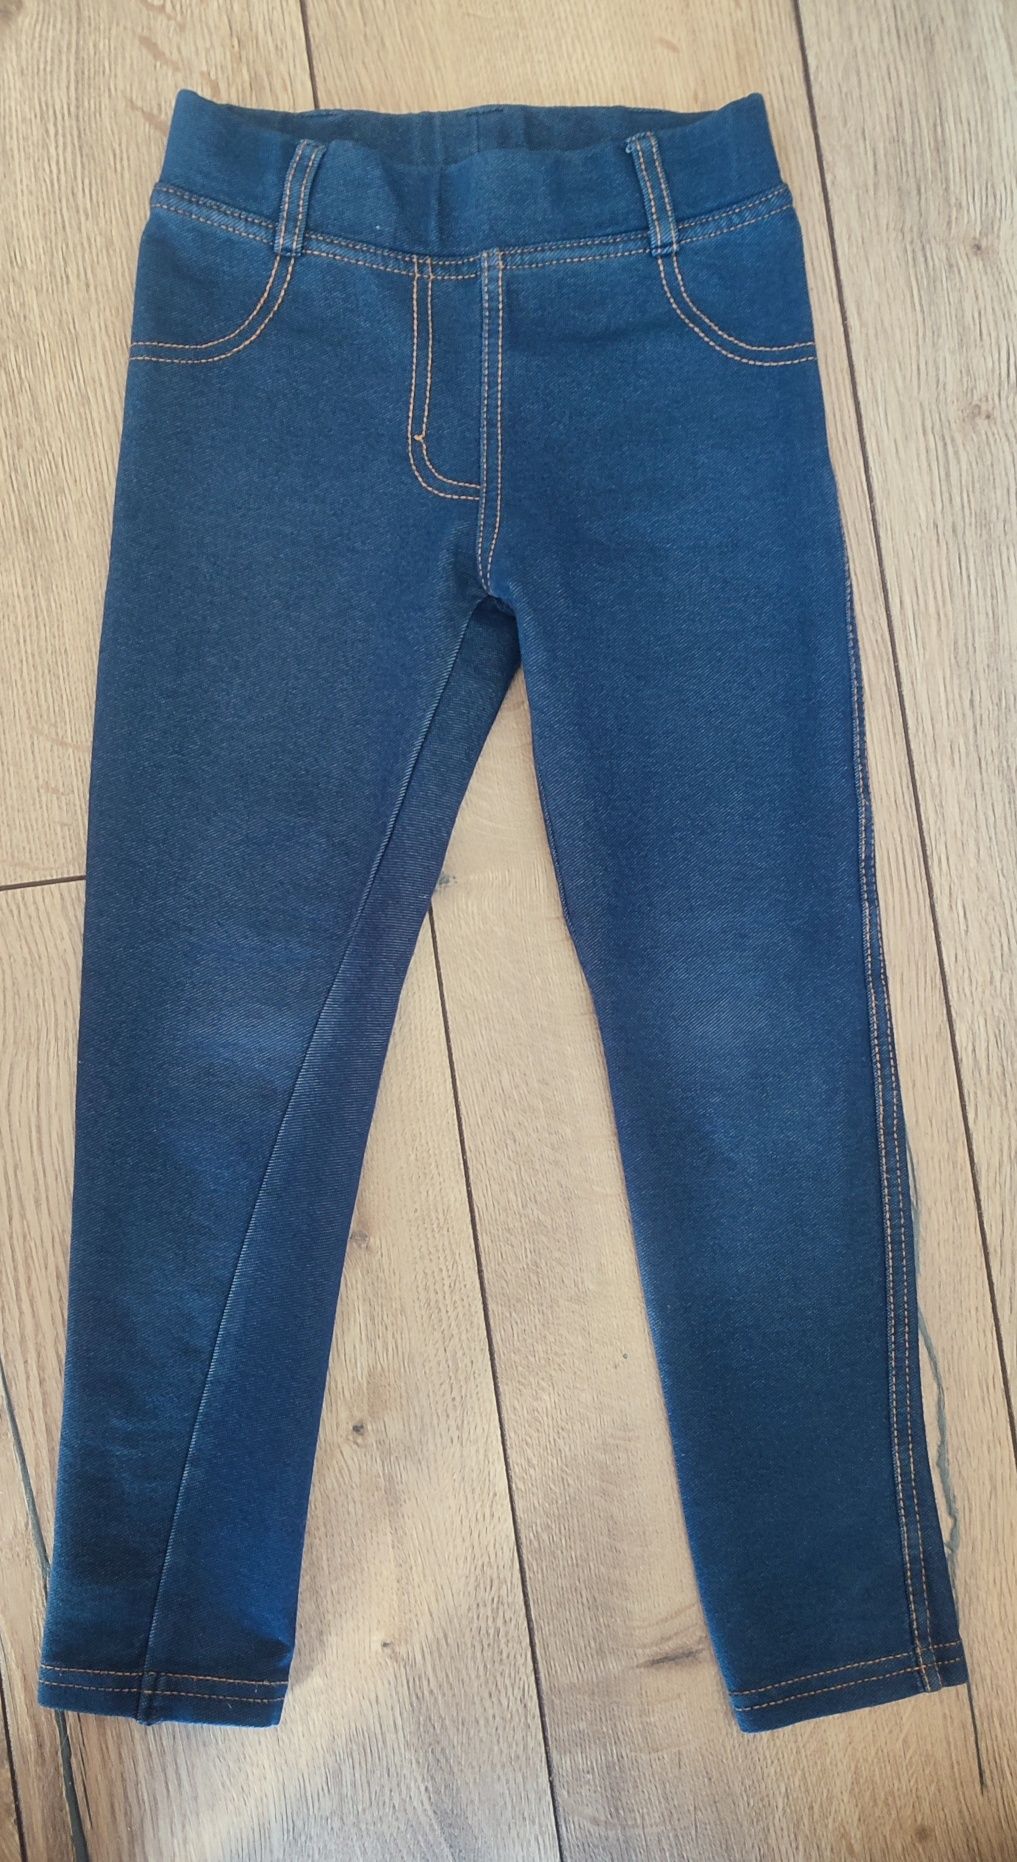 Spodnie, jeansy, jegginsy, legginsy dla dziewczynki, 4-5 lat